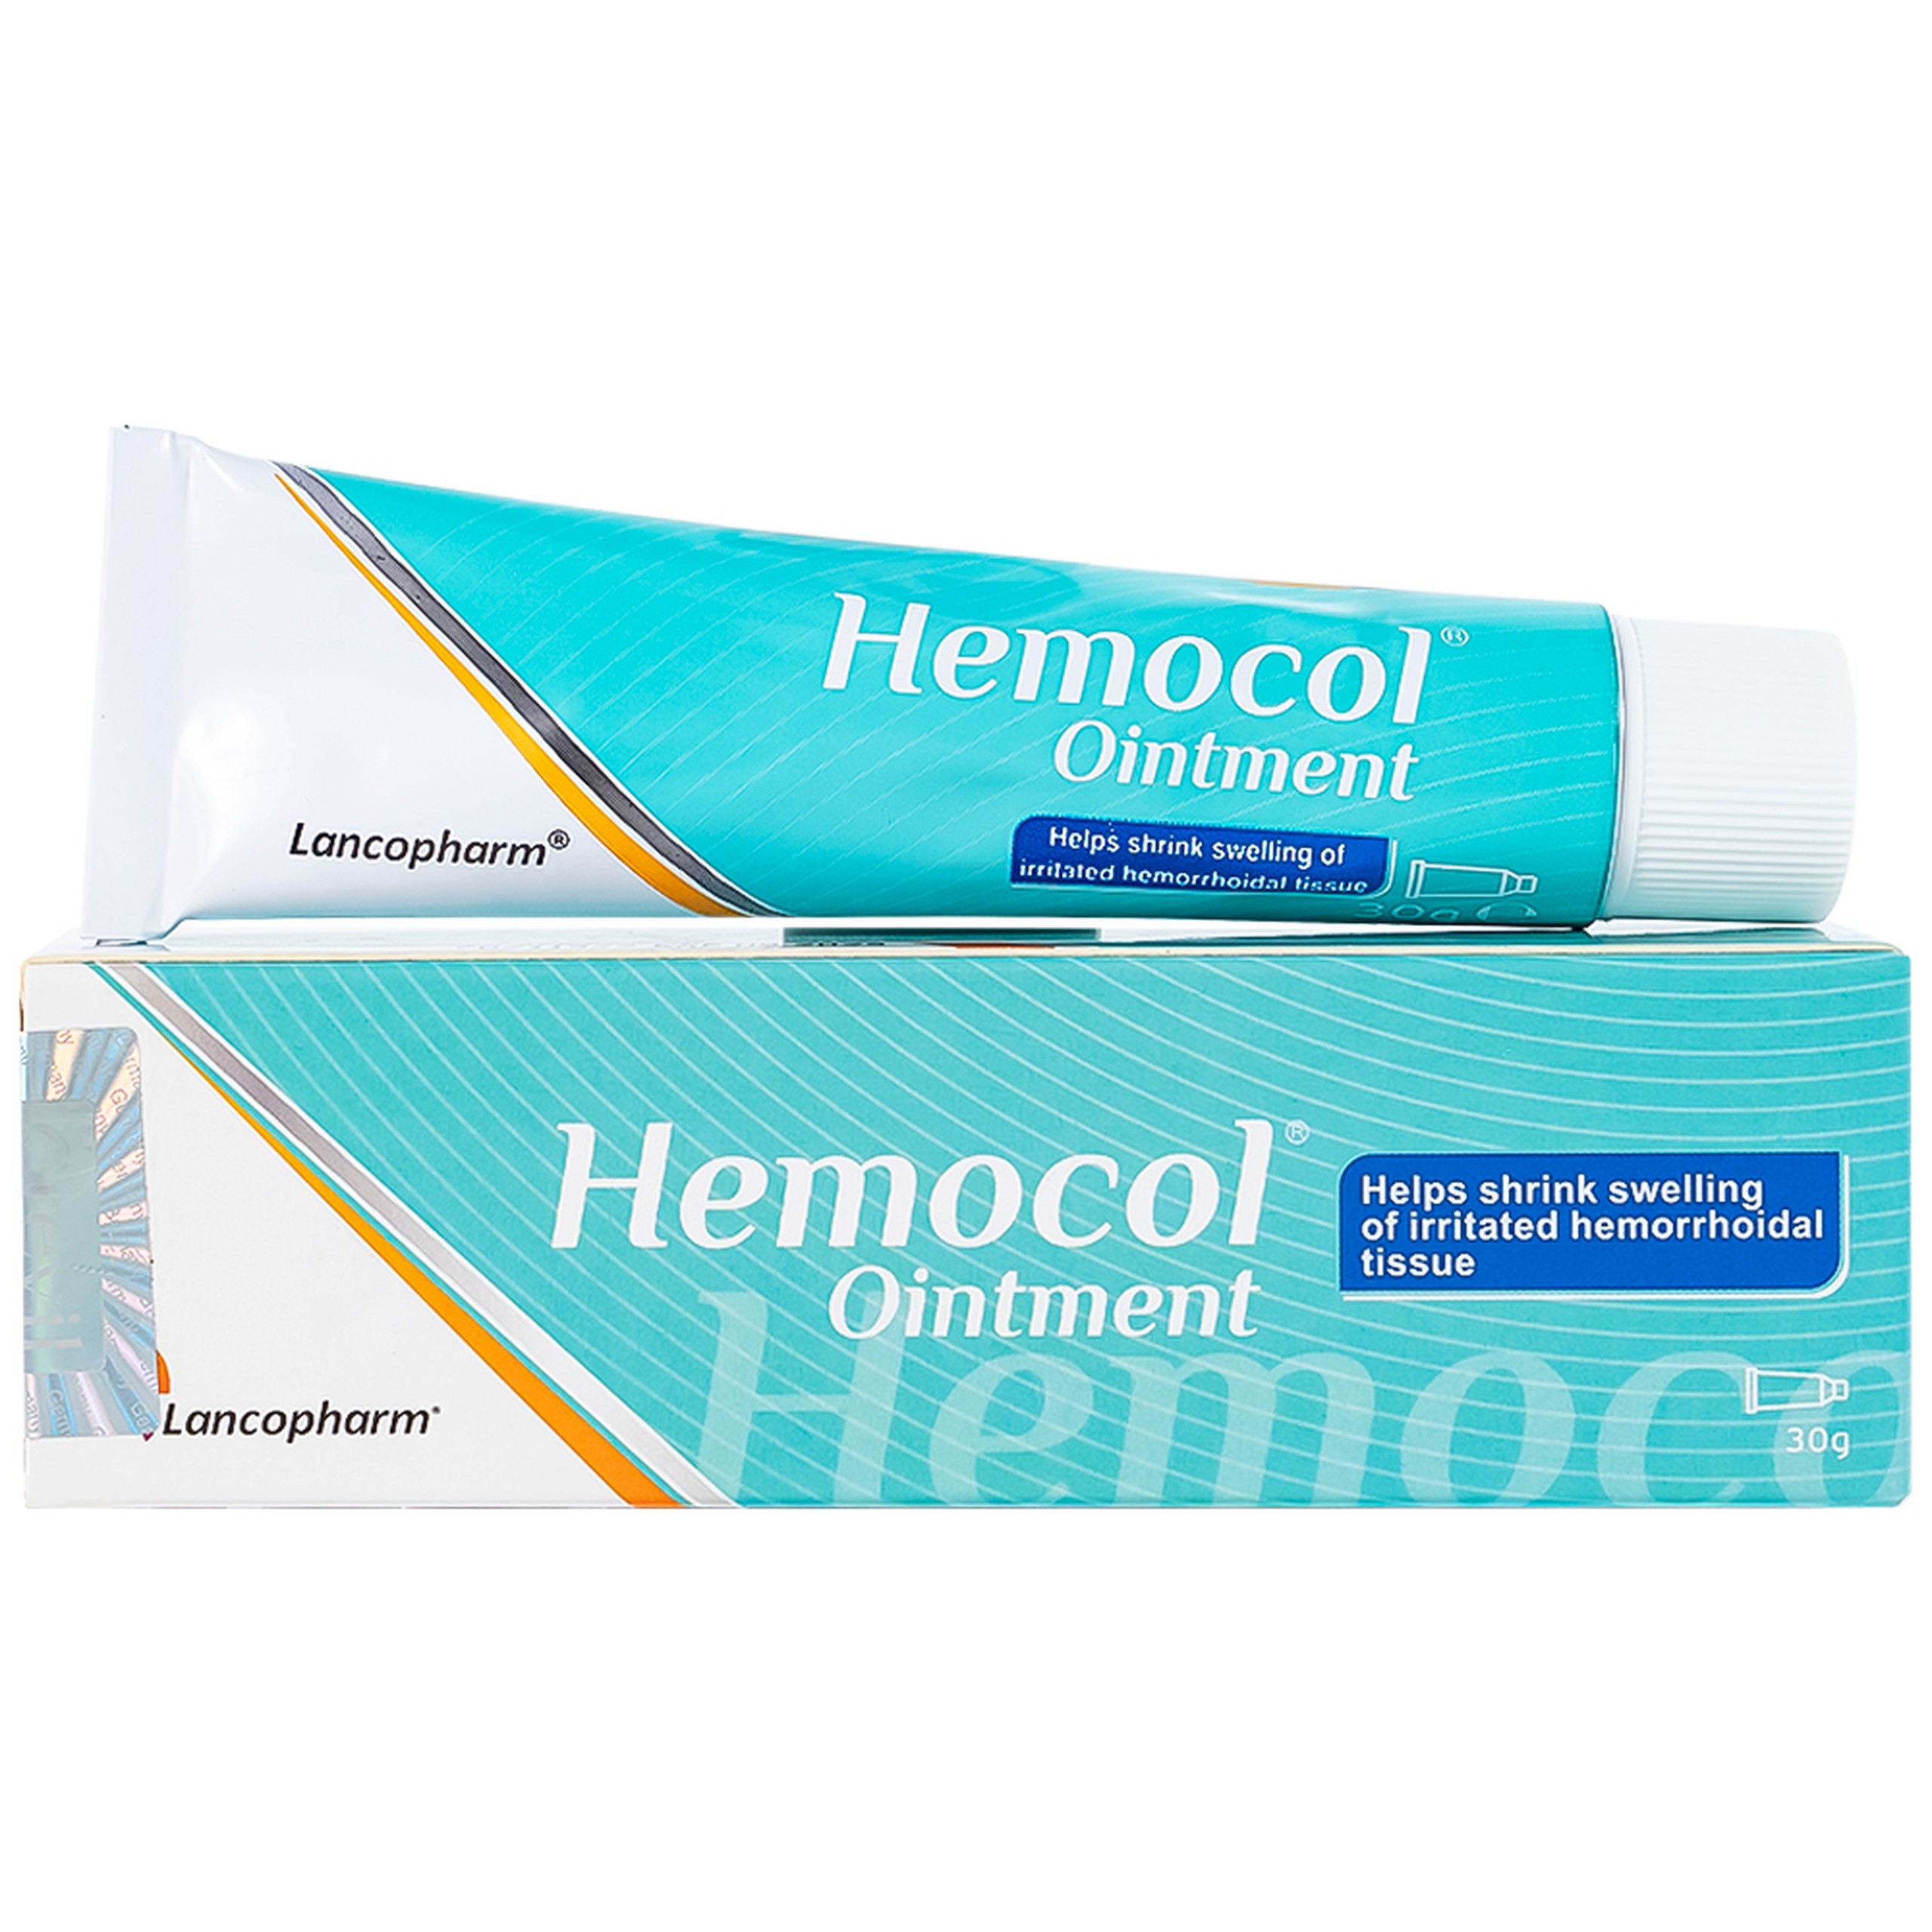 Kem bôi trĩ Hemocol Ointment Lancopharm giúp giảm cảm giác đau, nóng rát, ngứa, khó chịu vùng hậu môn (30g).